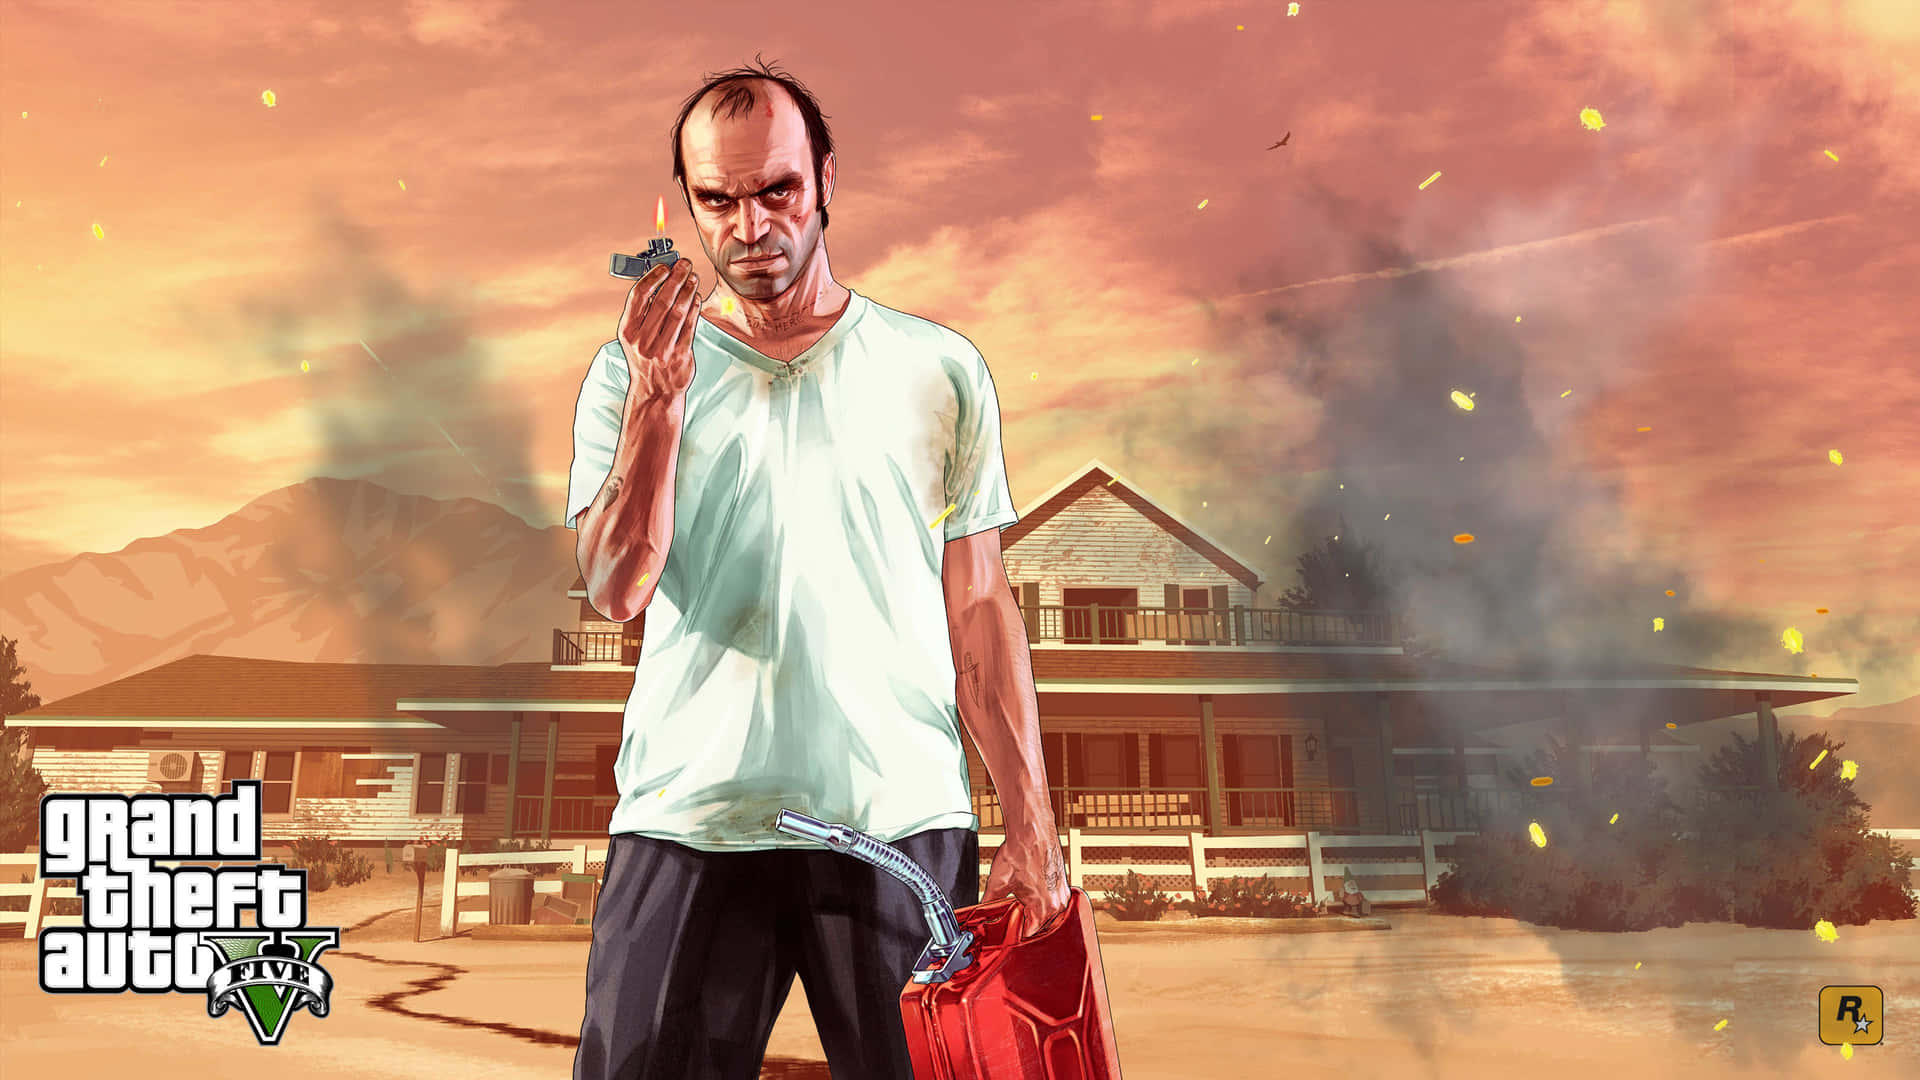 ¡experimentaun Juego Lleno De Acción En El Mundo De Grand Theft Auto 5!